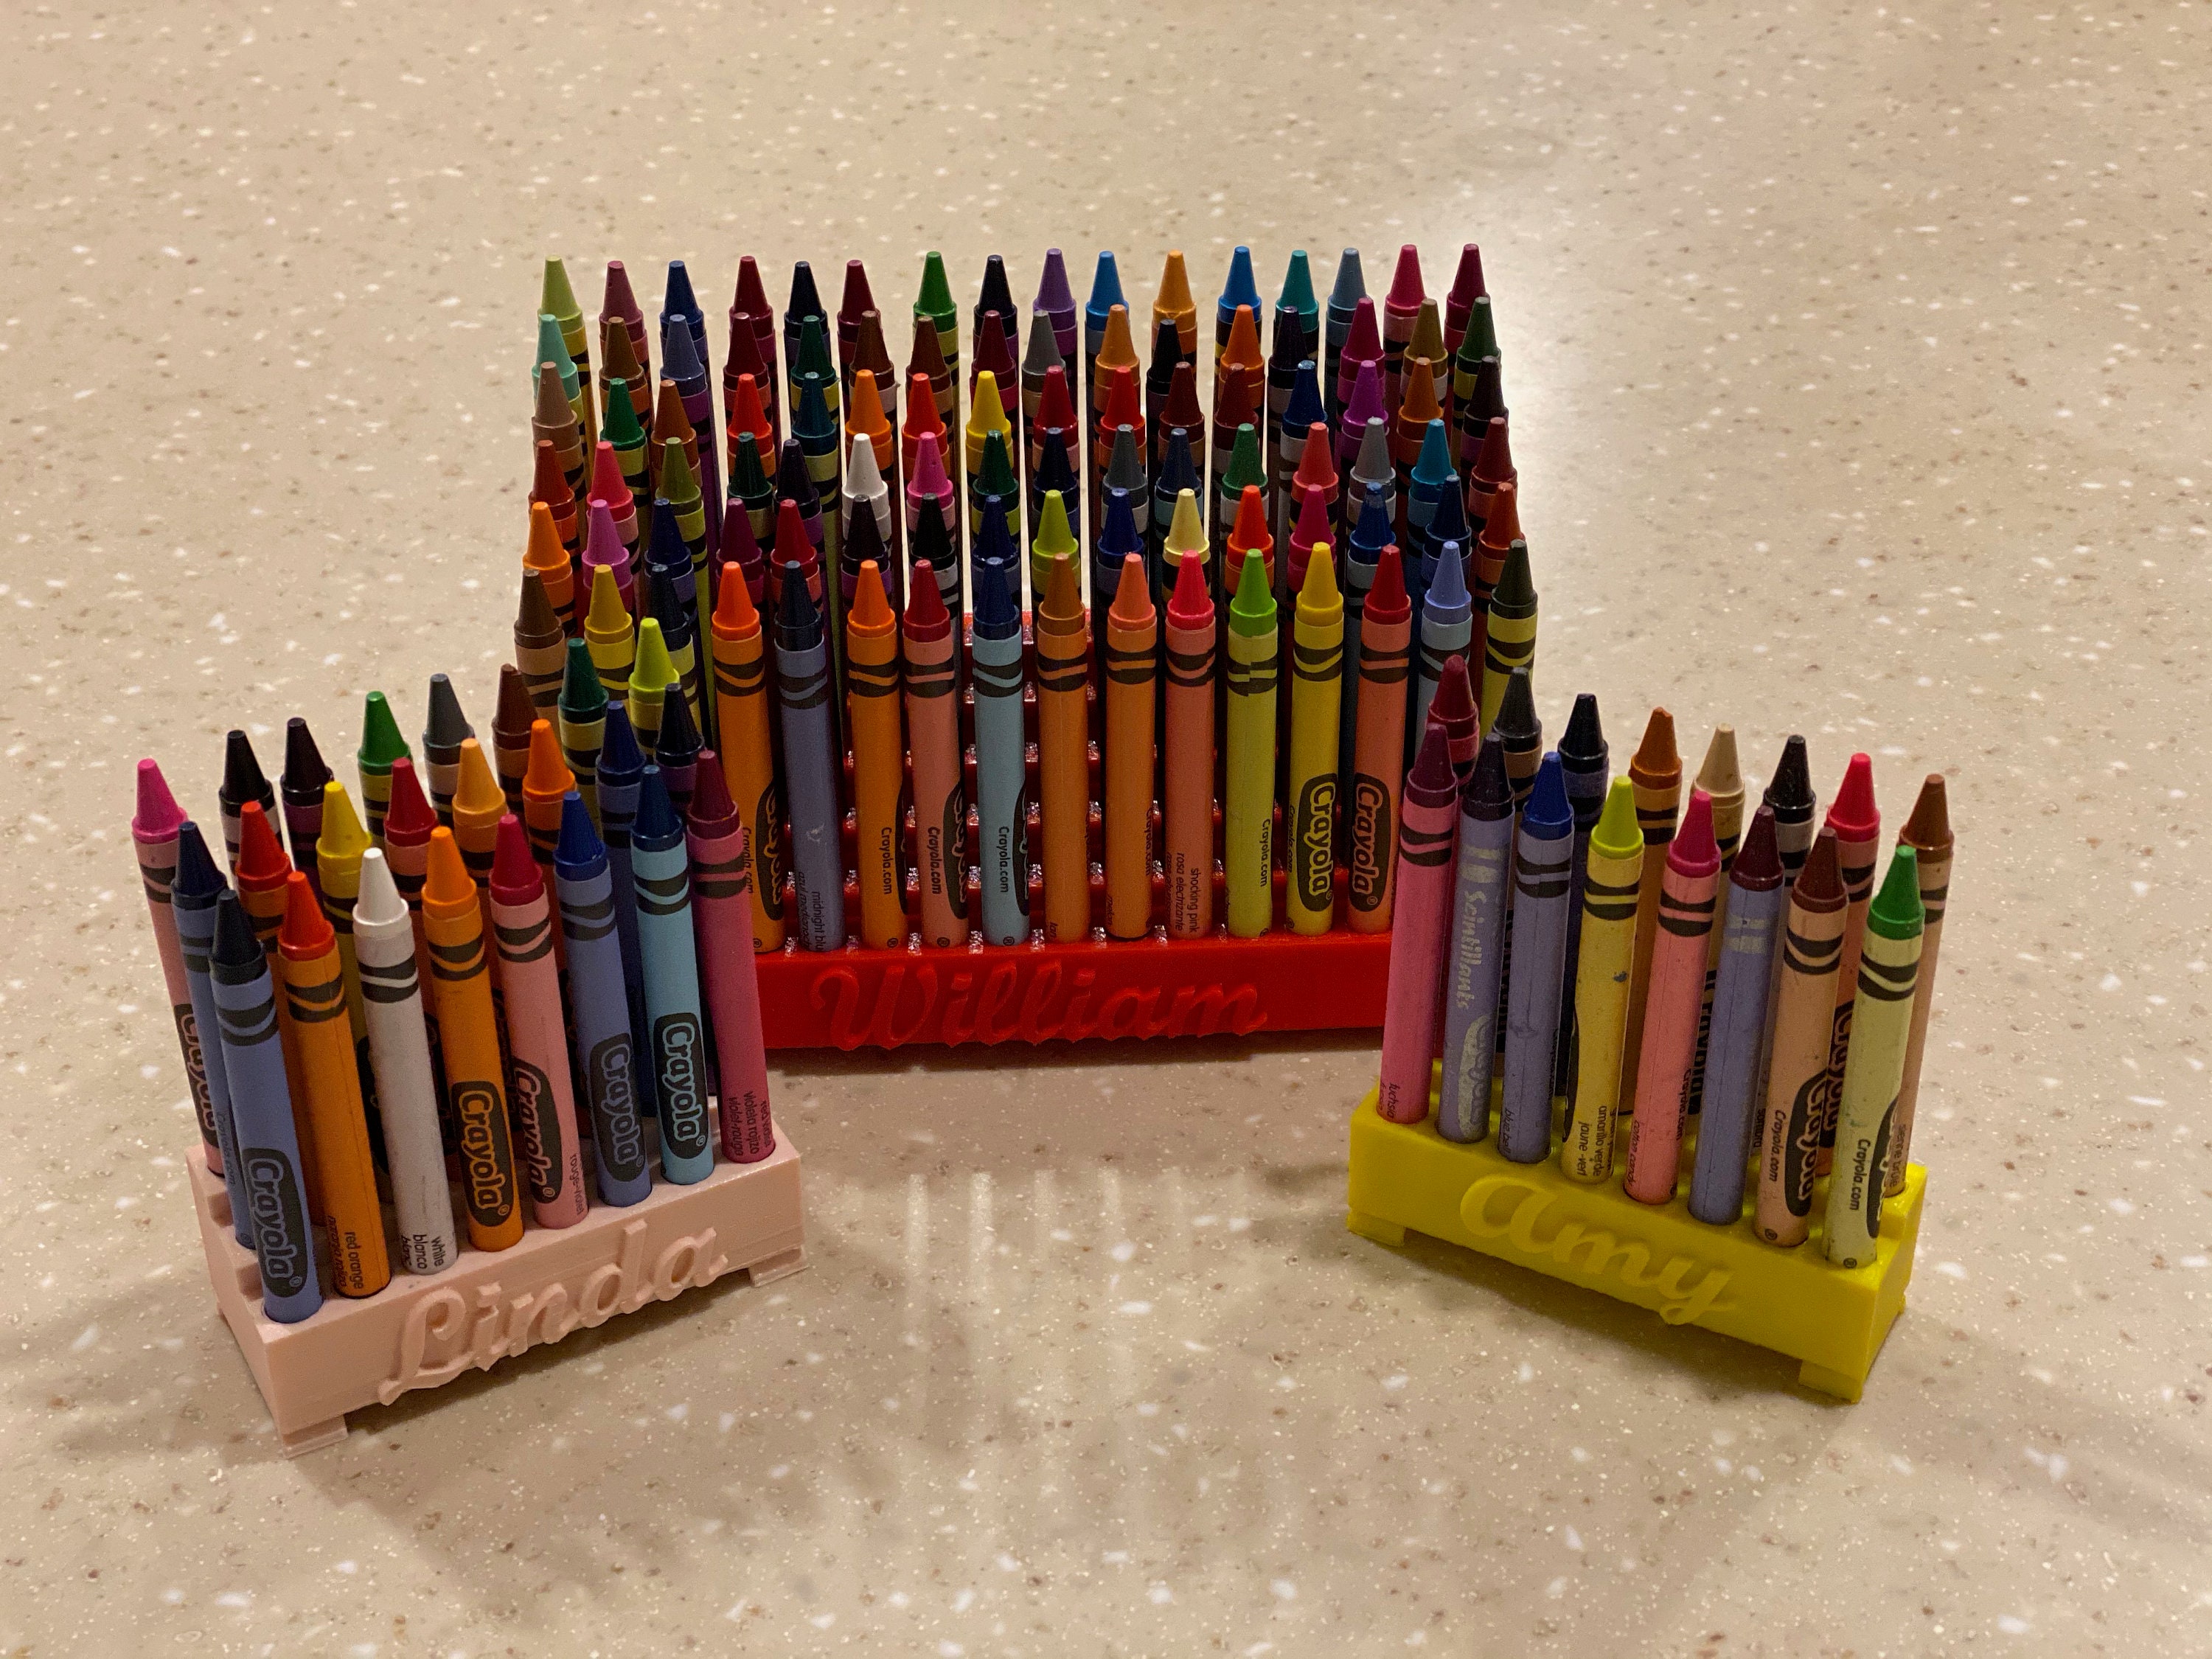 Custom Imprinted 6-Piece Crayon Set - Crayons